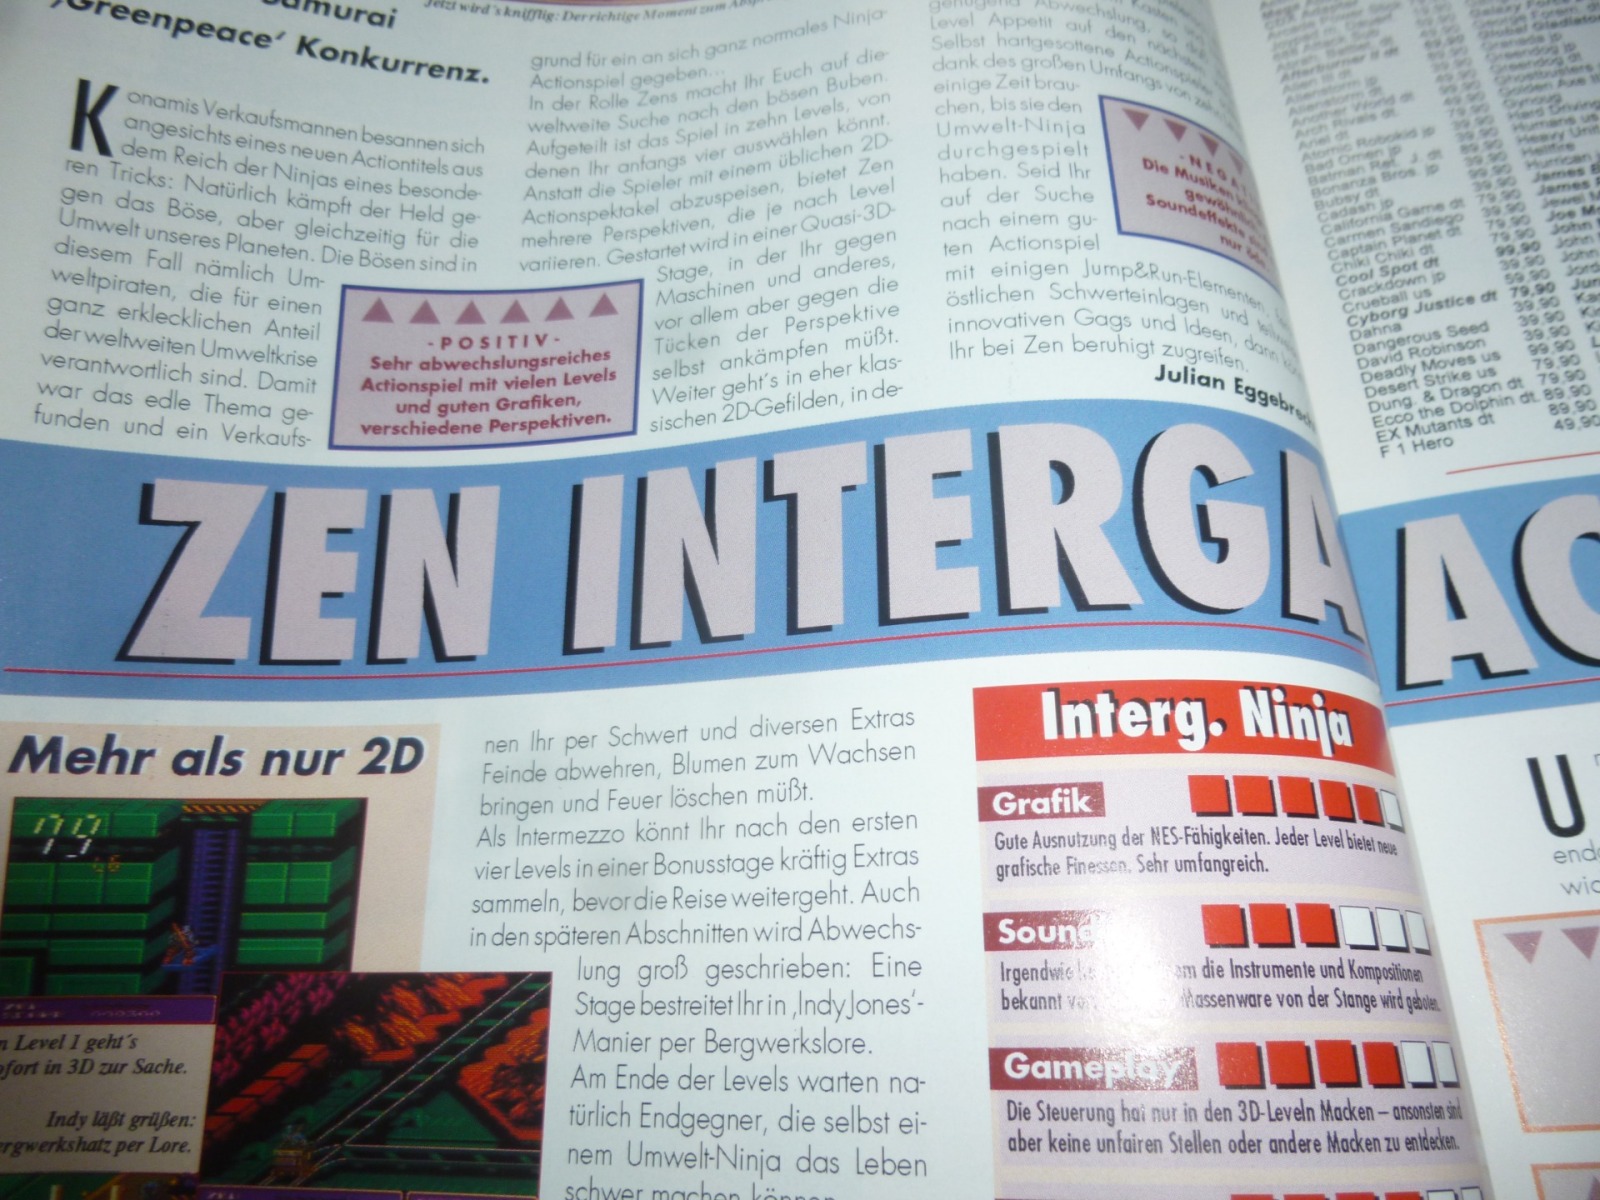 TOTAL Das unabhängige Magazin - 100 Nintendo - Ausgabe 9/93 1993 14